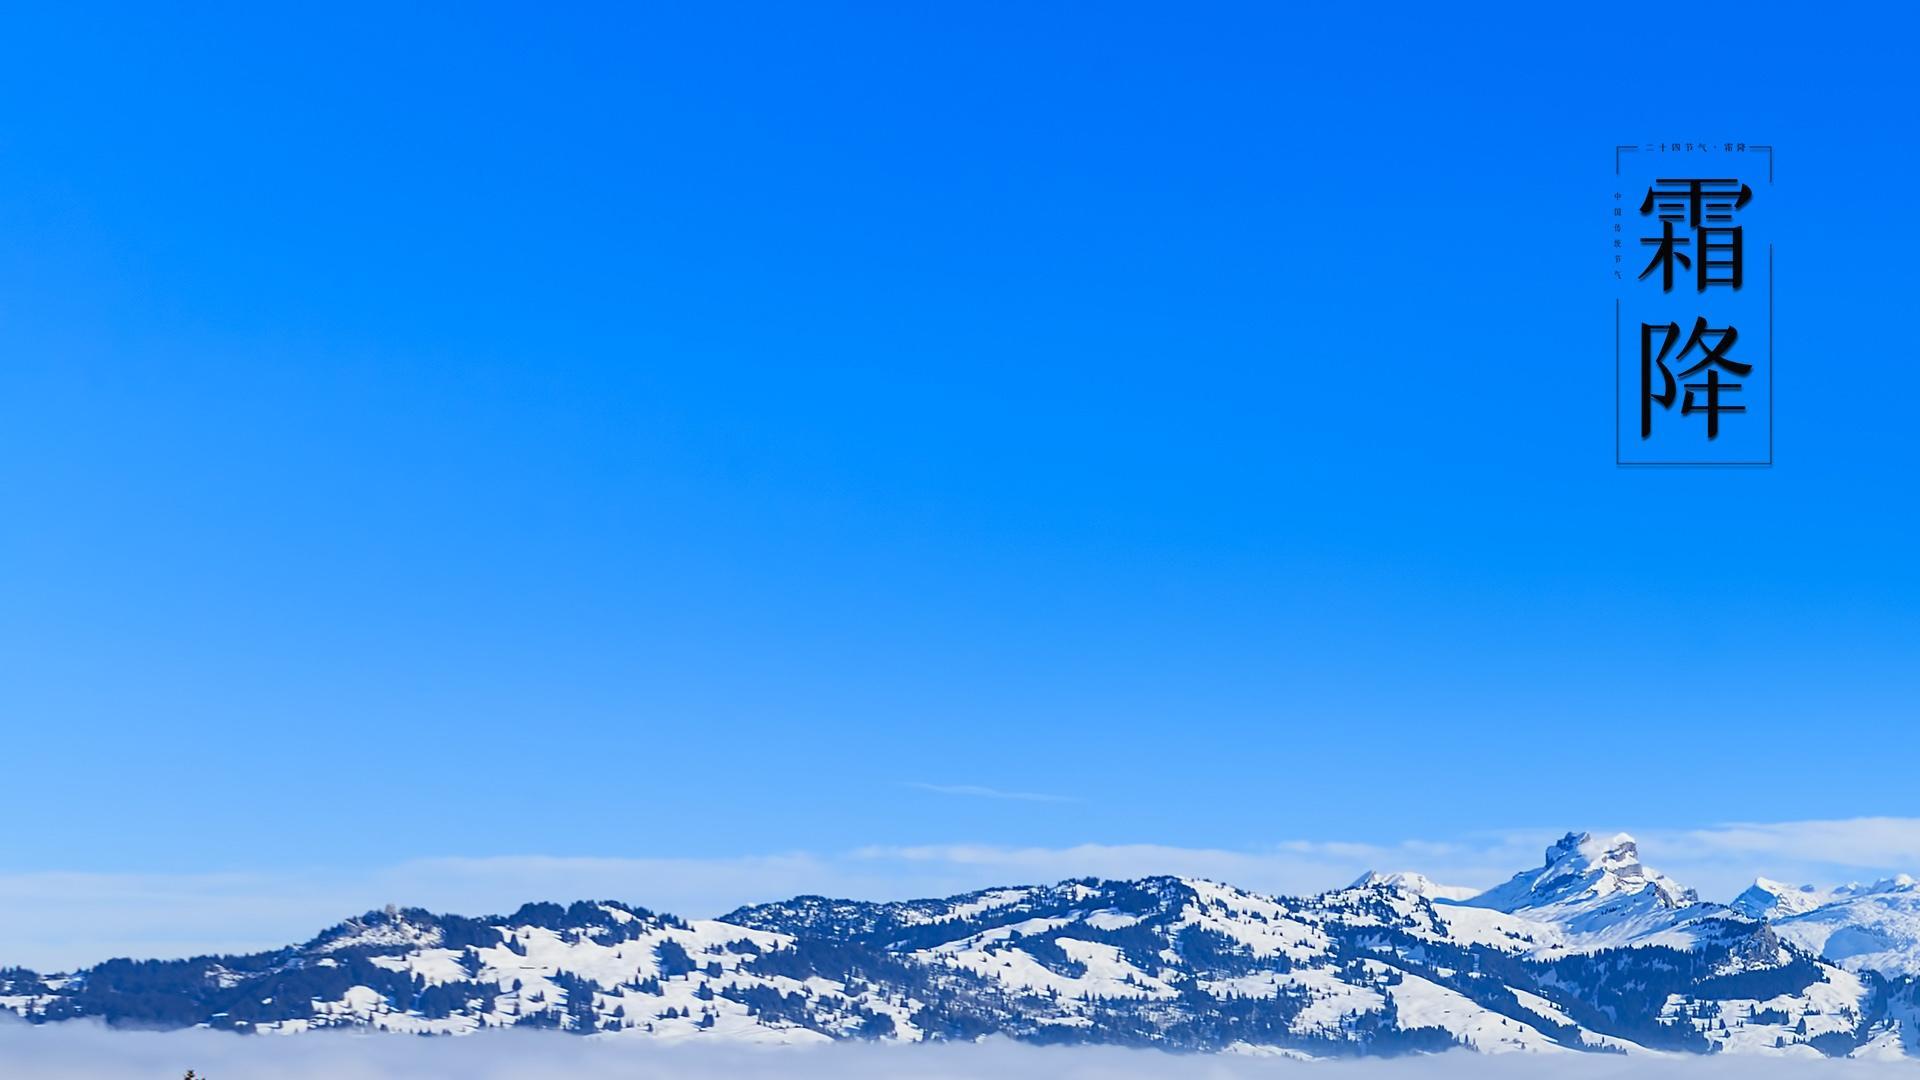 雪山霜降主题蔚蓝天空唯美风景壁纸图片